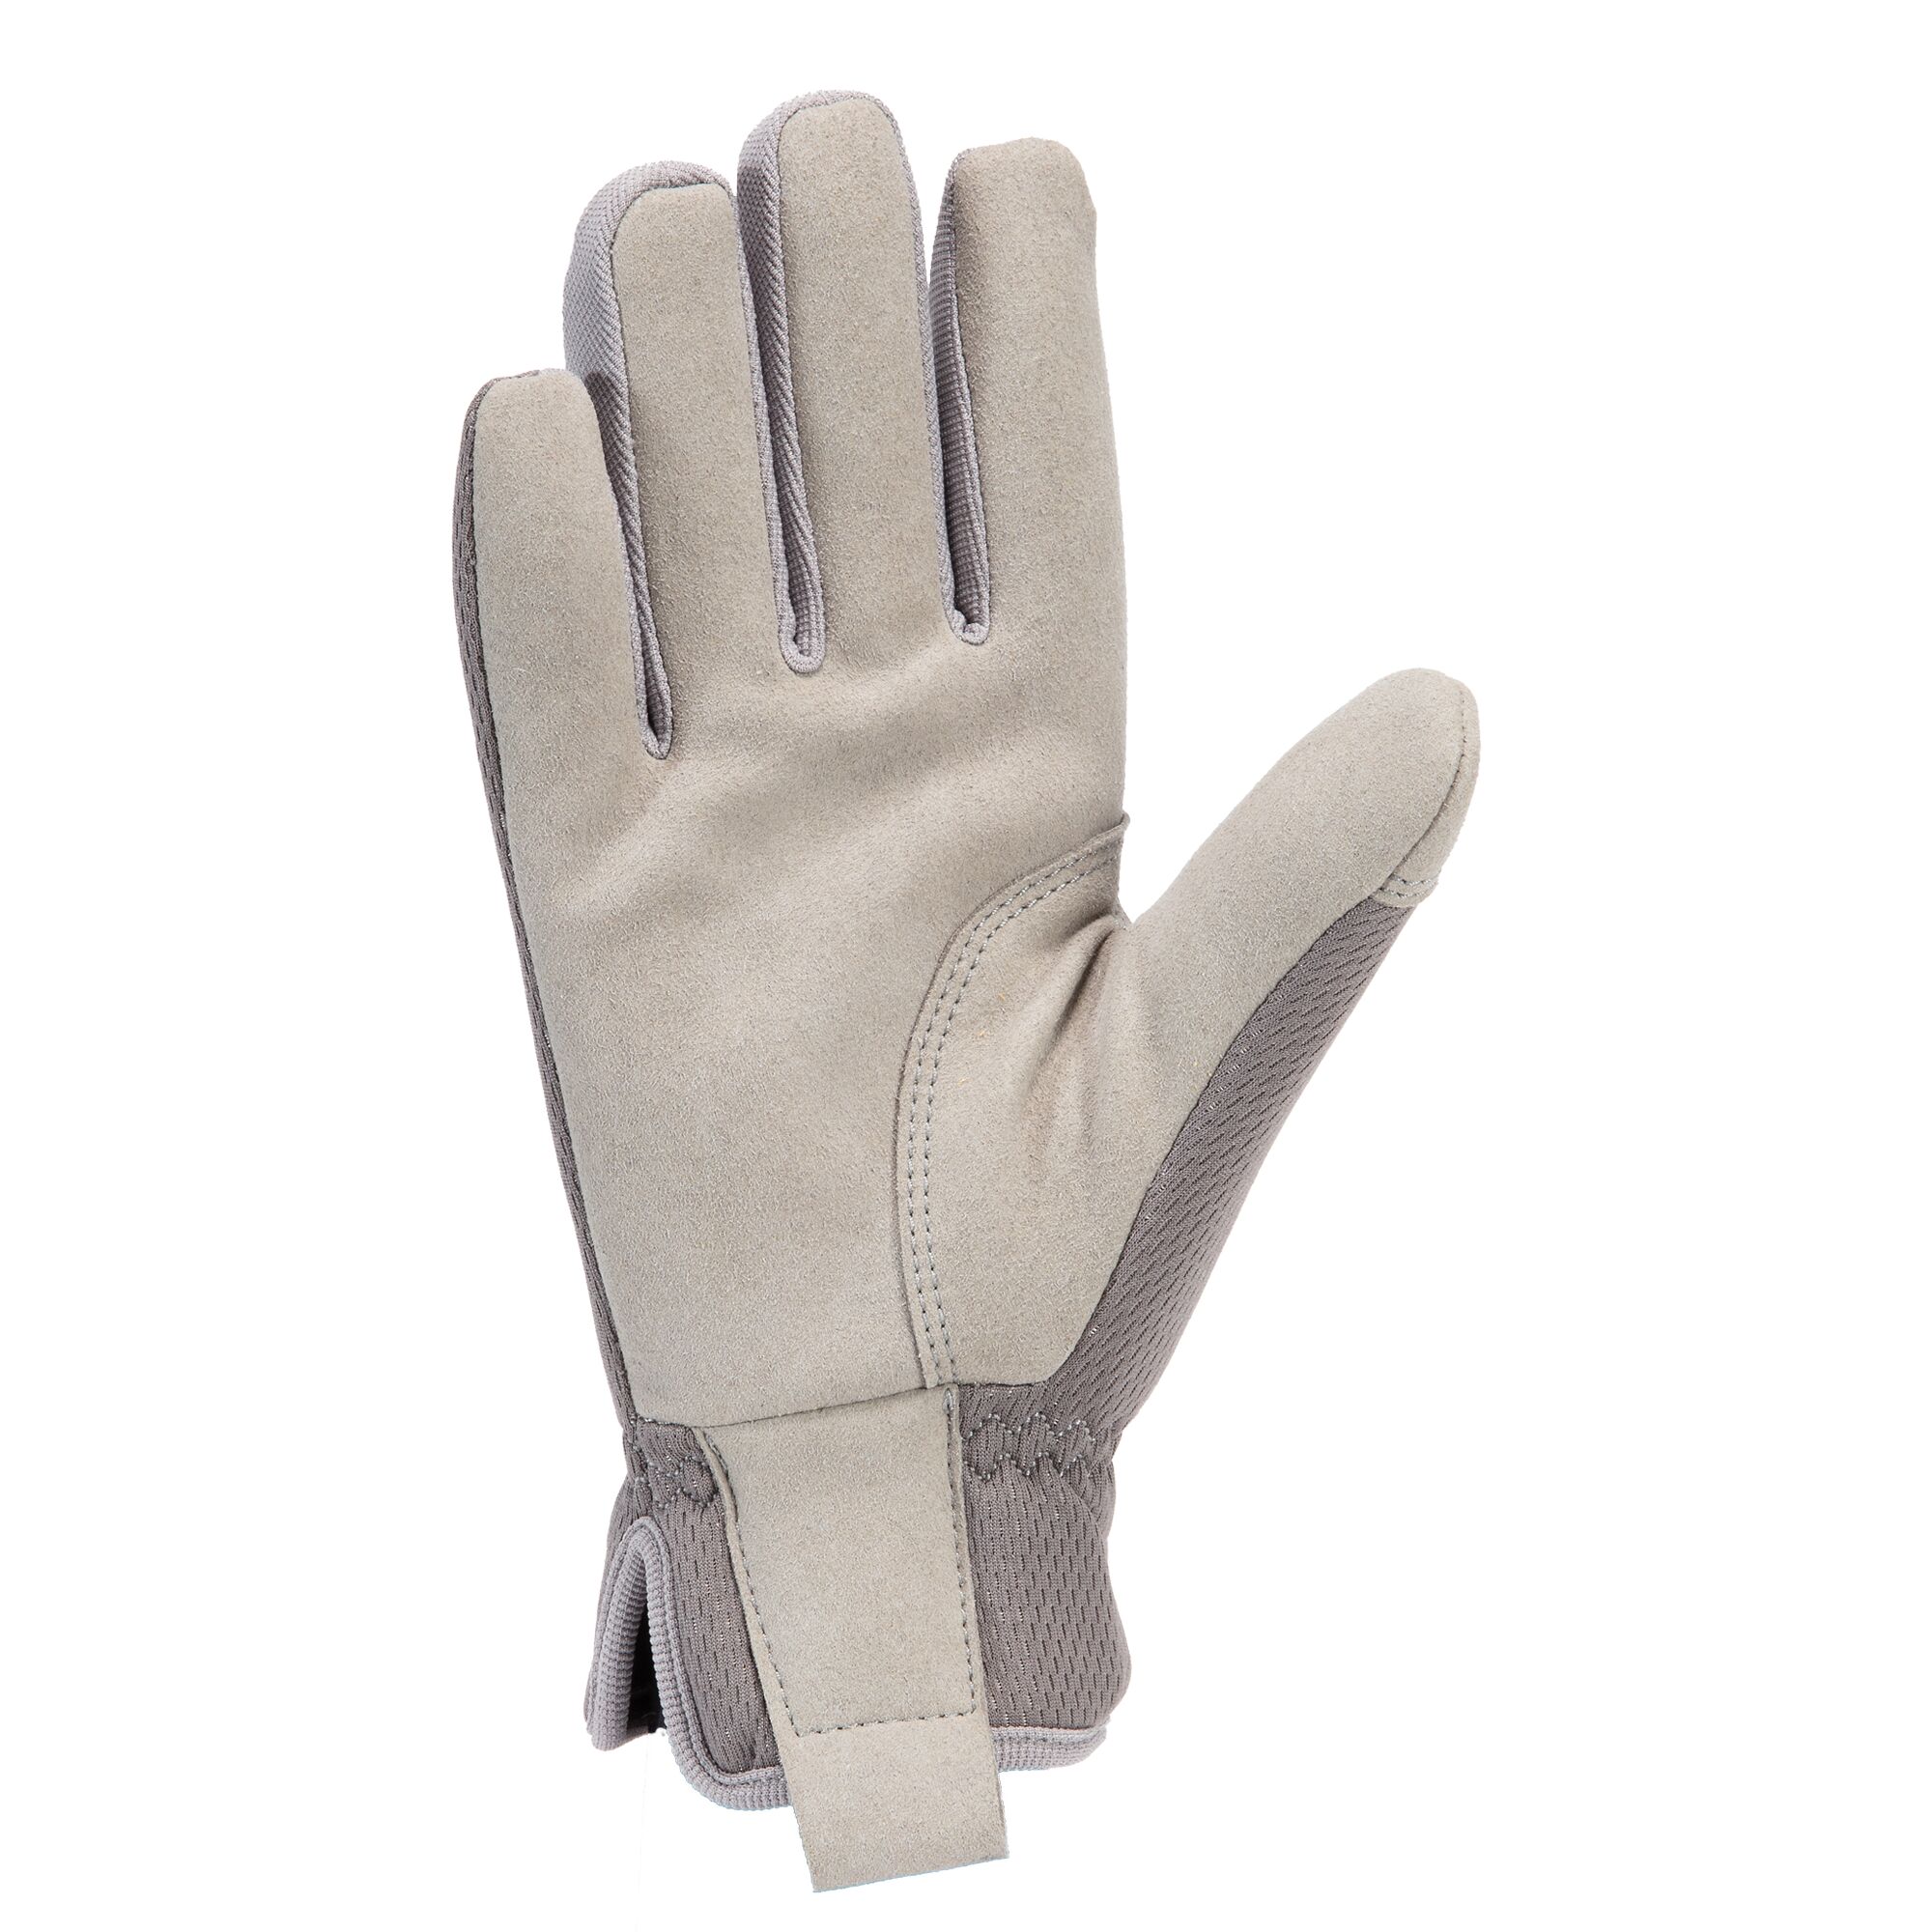 Men's High Dexterity Open Cuff Glove